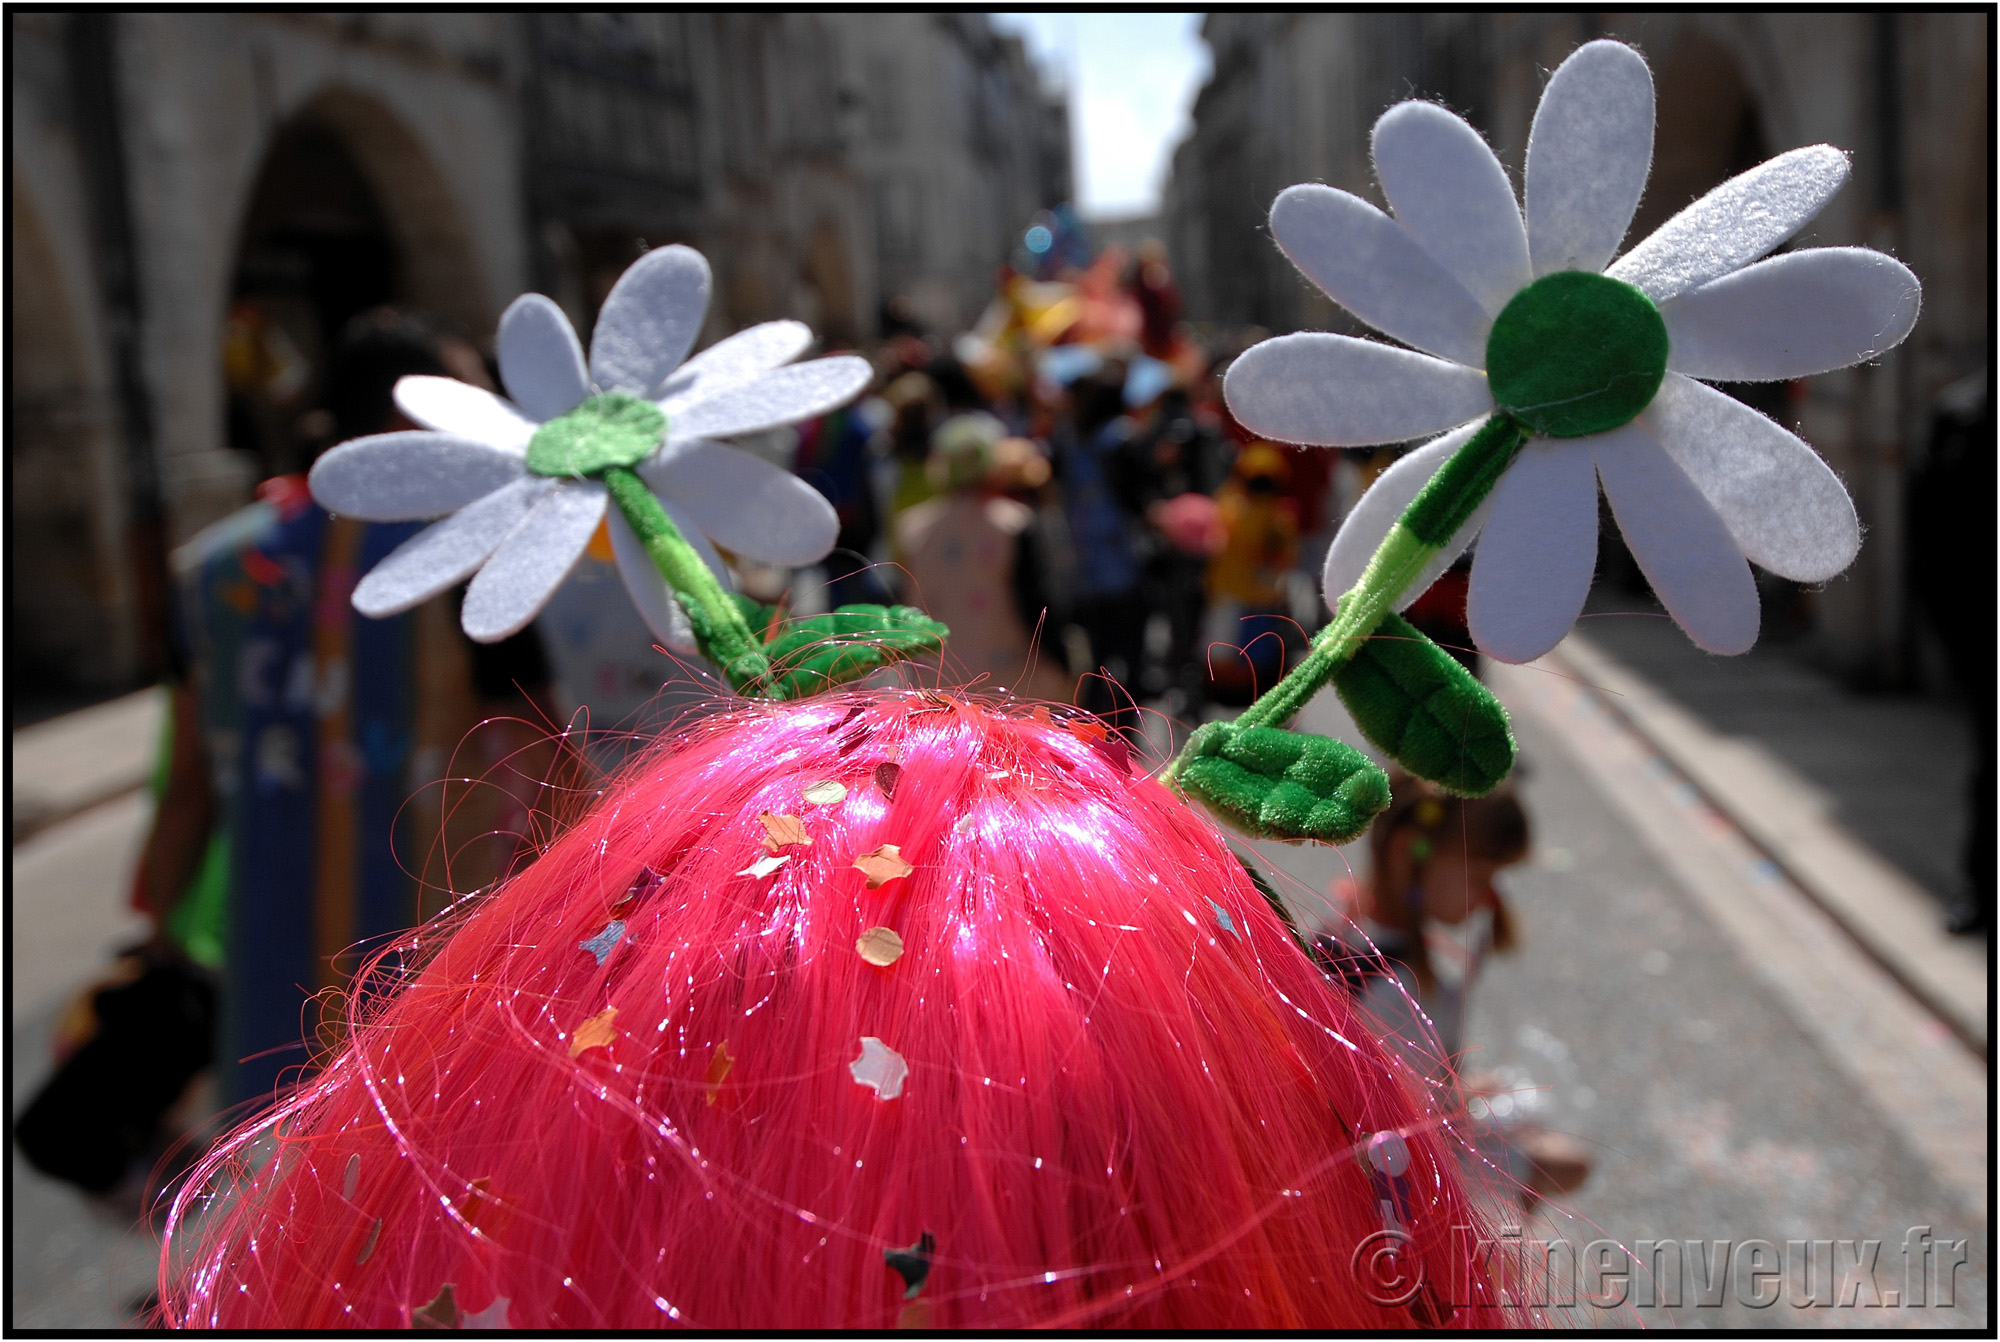 kinenveux_20_carnaval2015lr.jpg - Carnaval des Enfants 2015 - La Rochelle